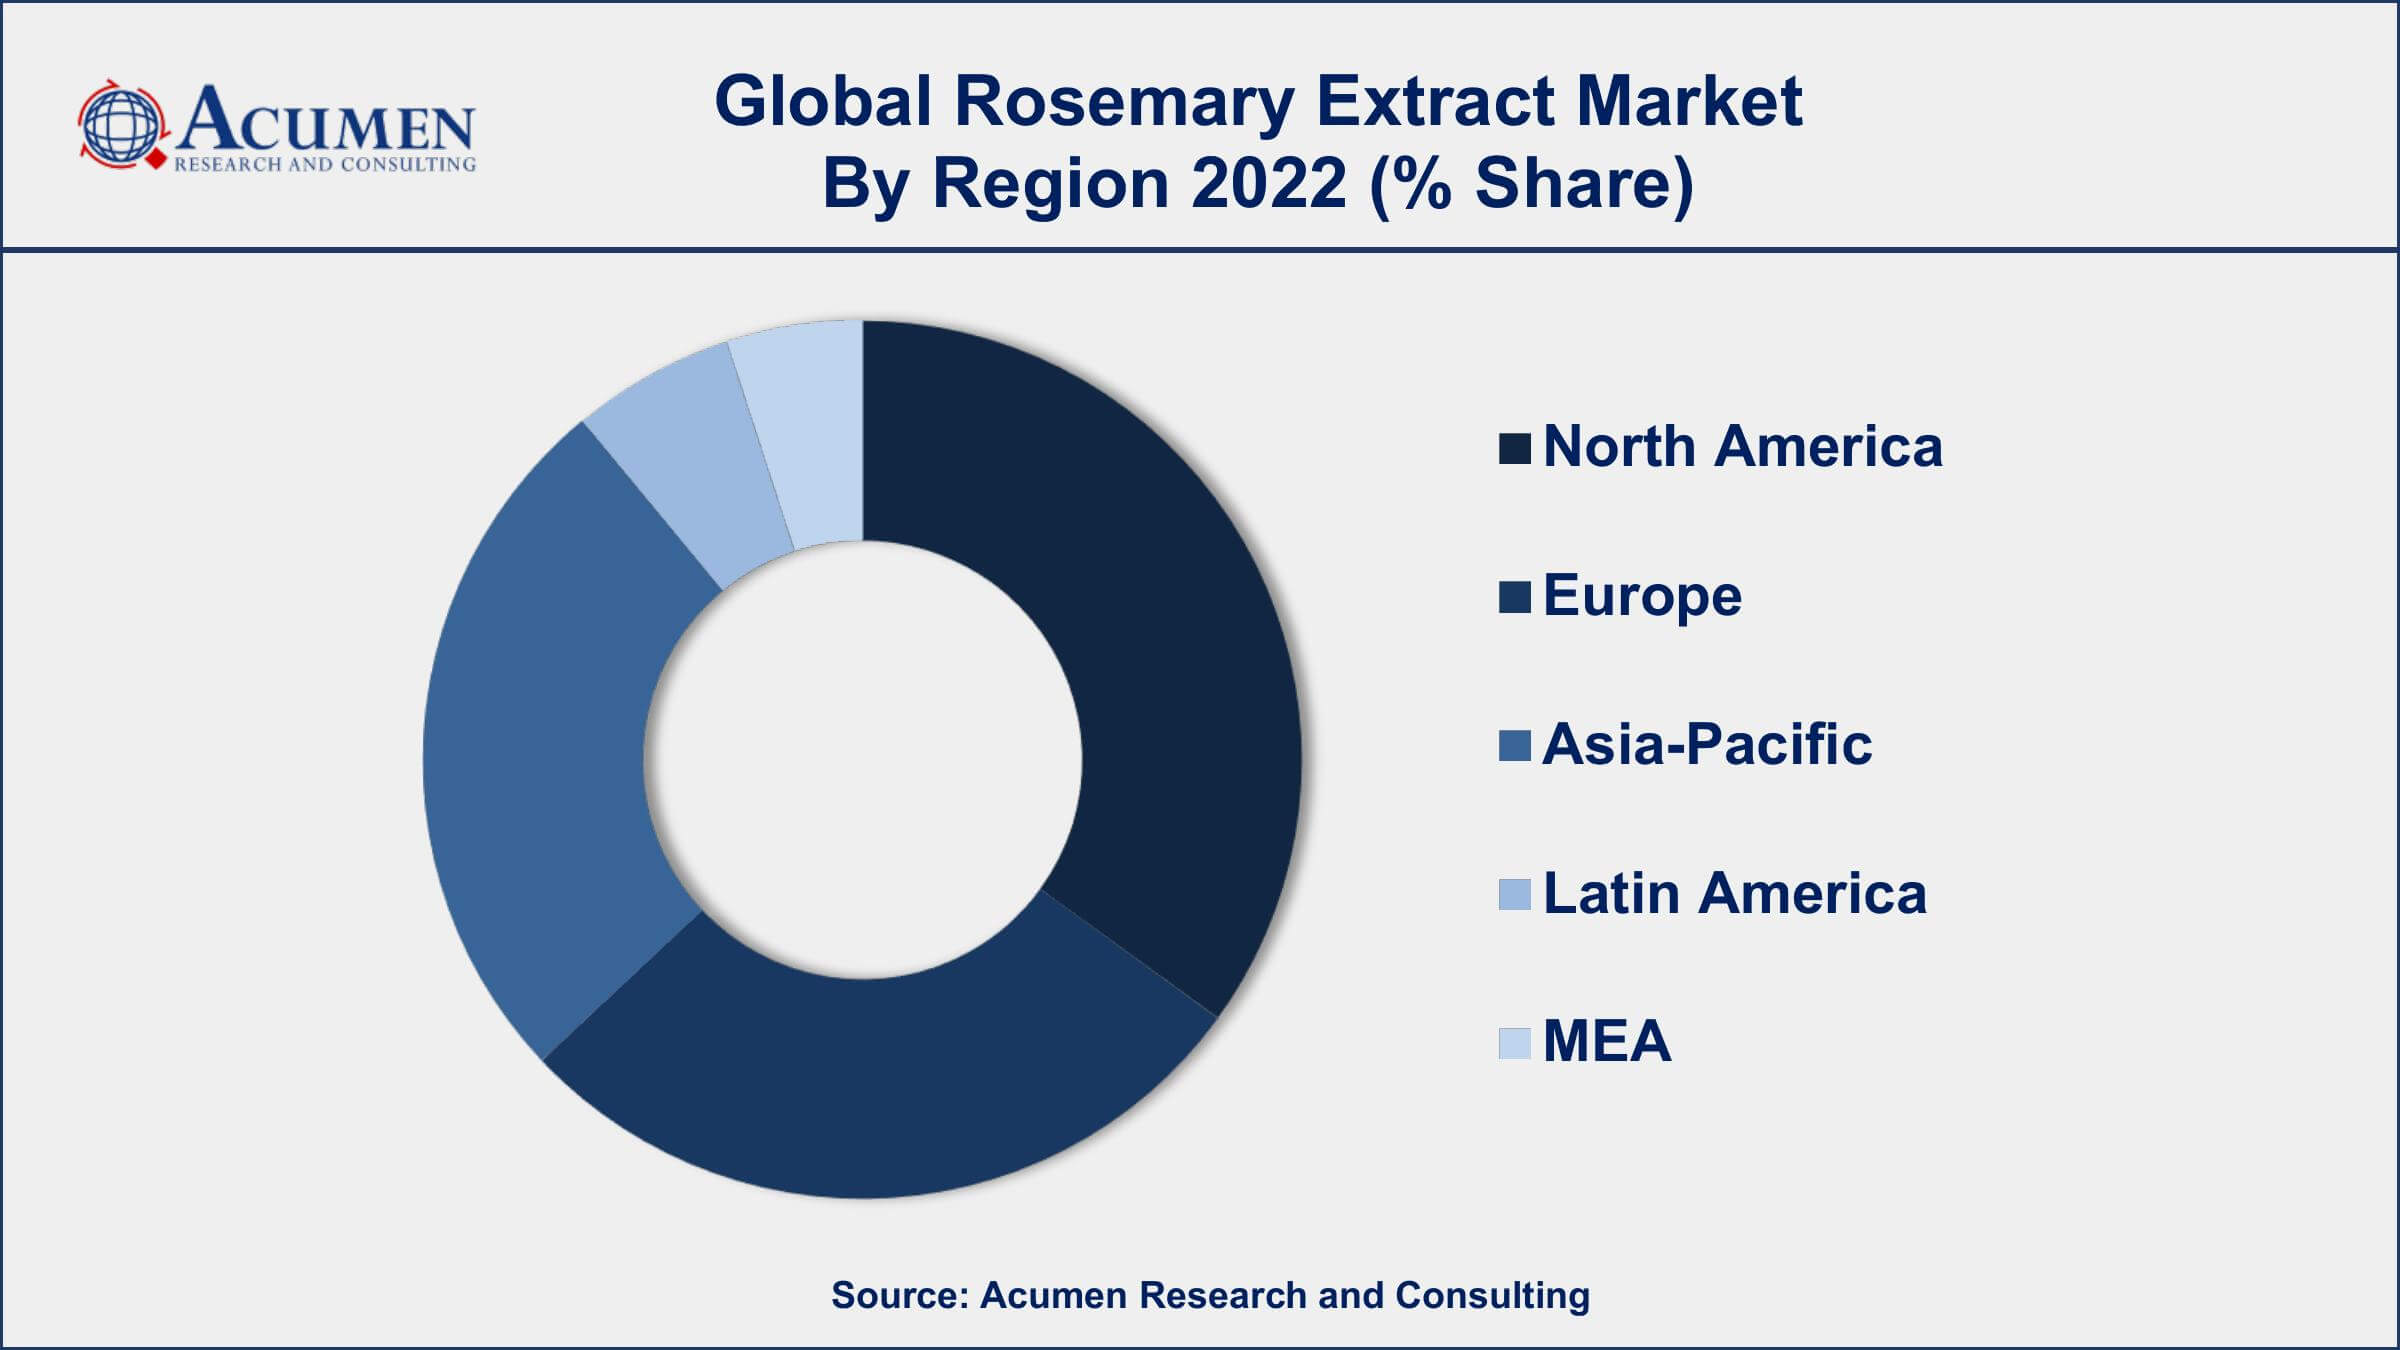 Rosemary Extract Market Drivers